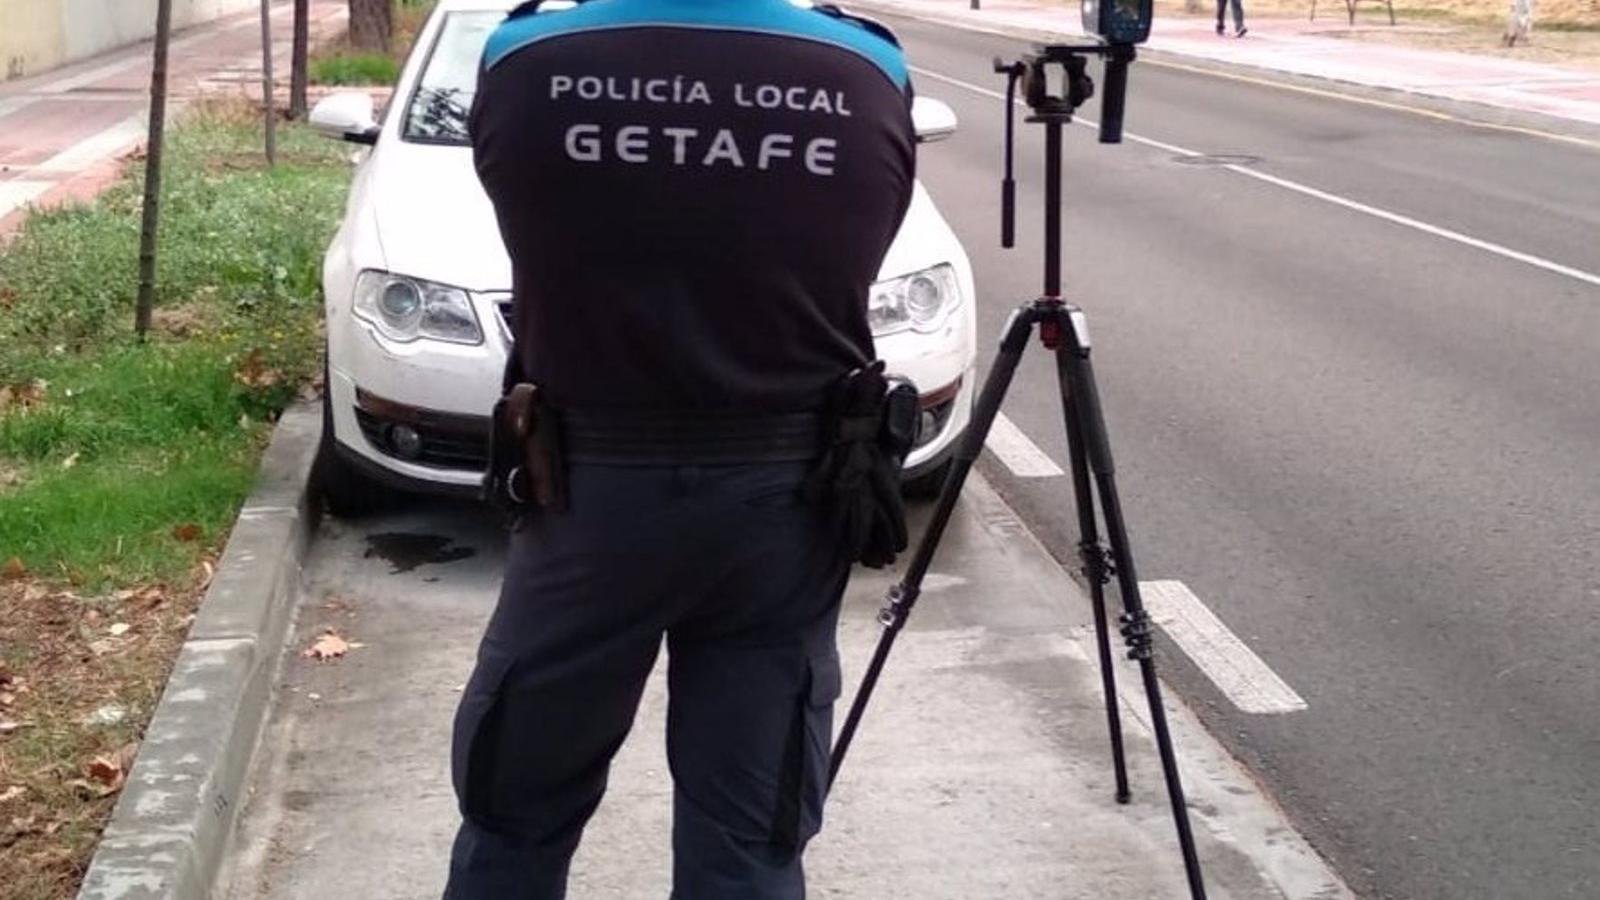 El Pleno de Getafe abordará la creación de una unidad de Policía local contra las bandas juveniles violentas